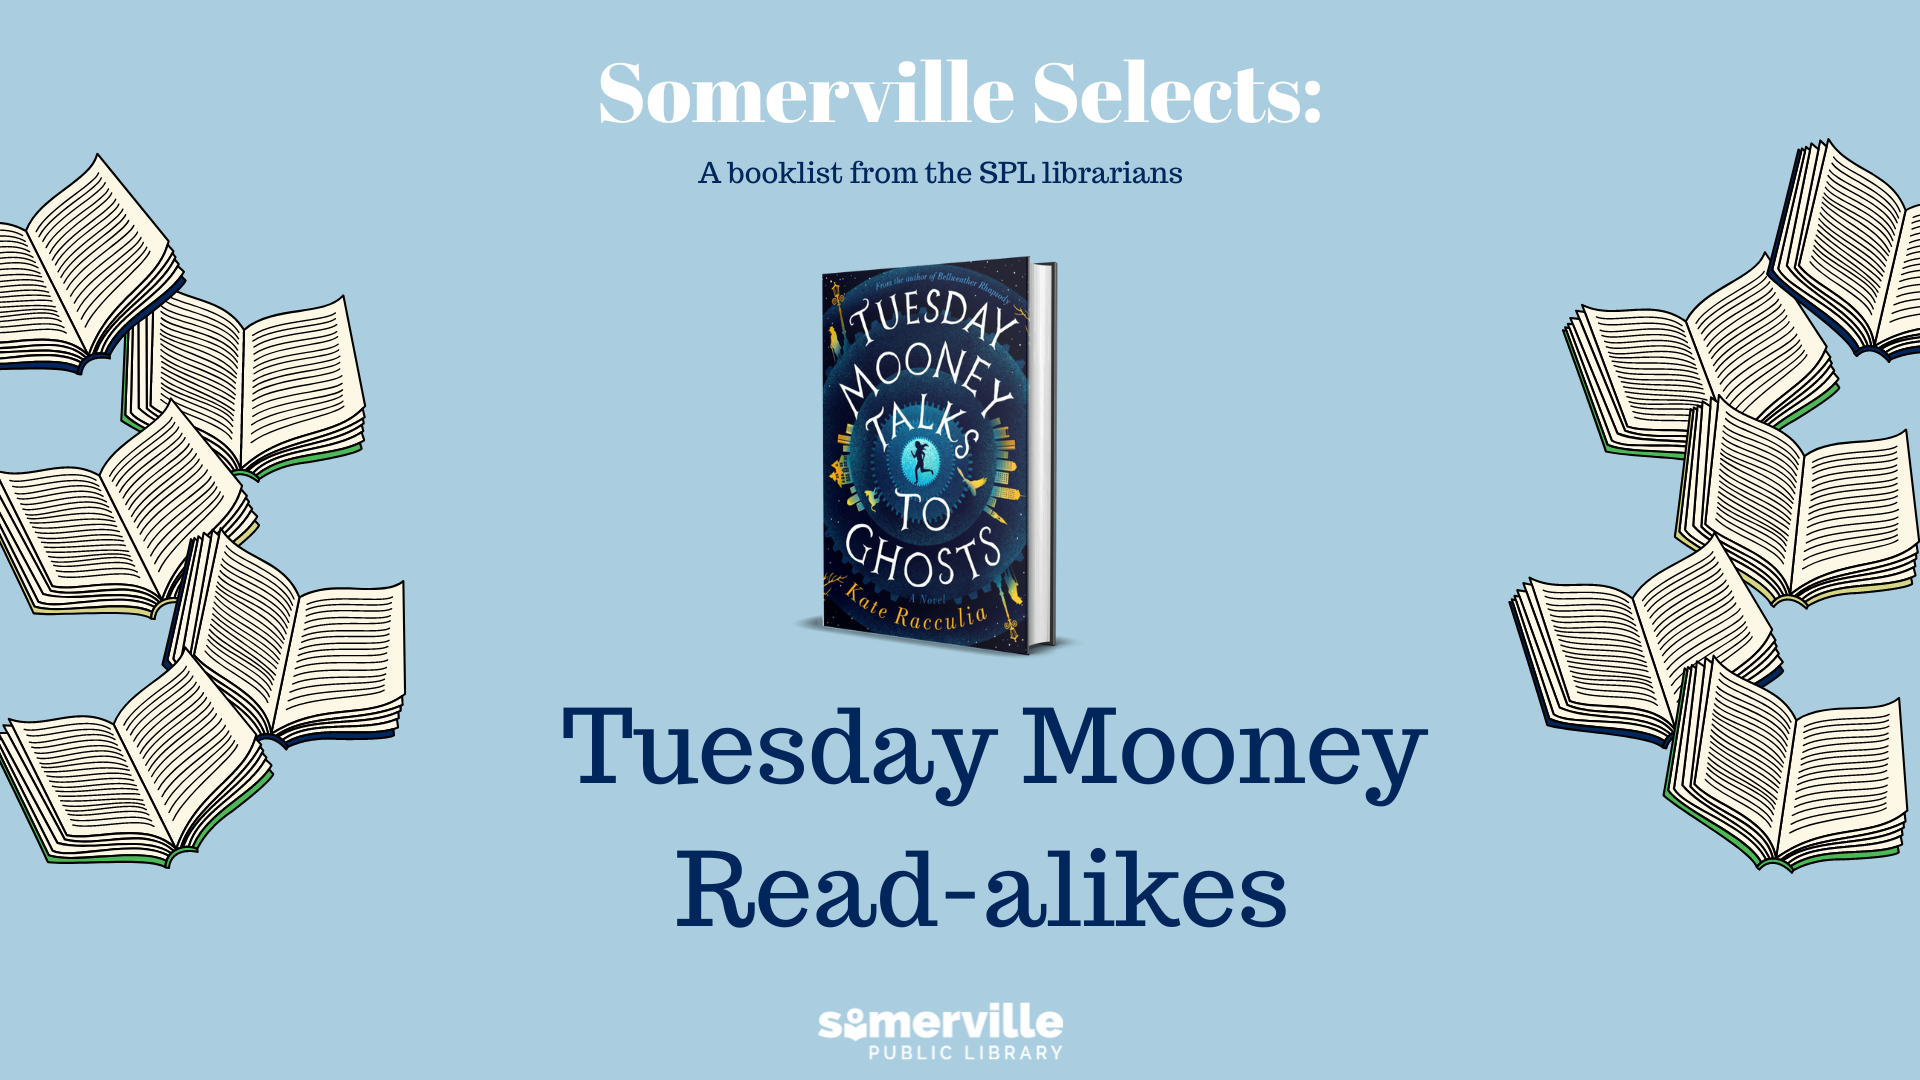 Tuesday Mooney Read-alikes